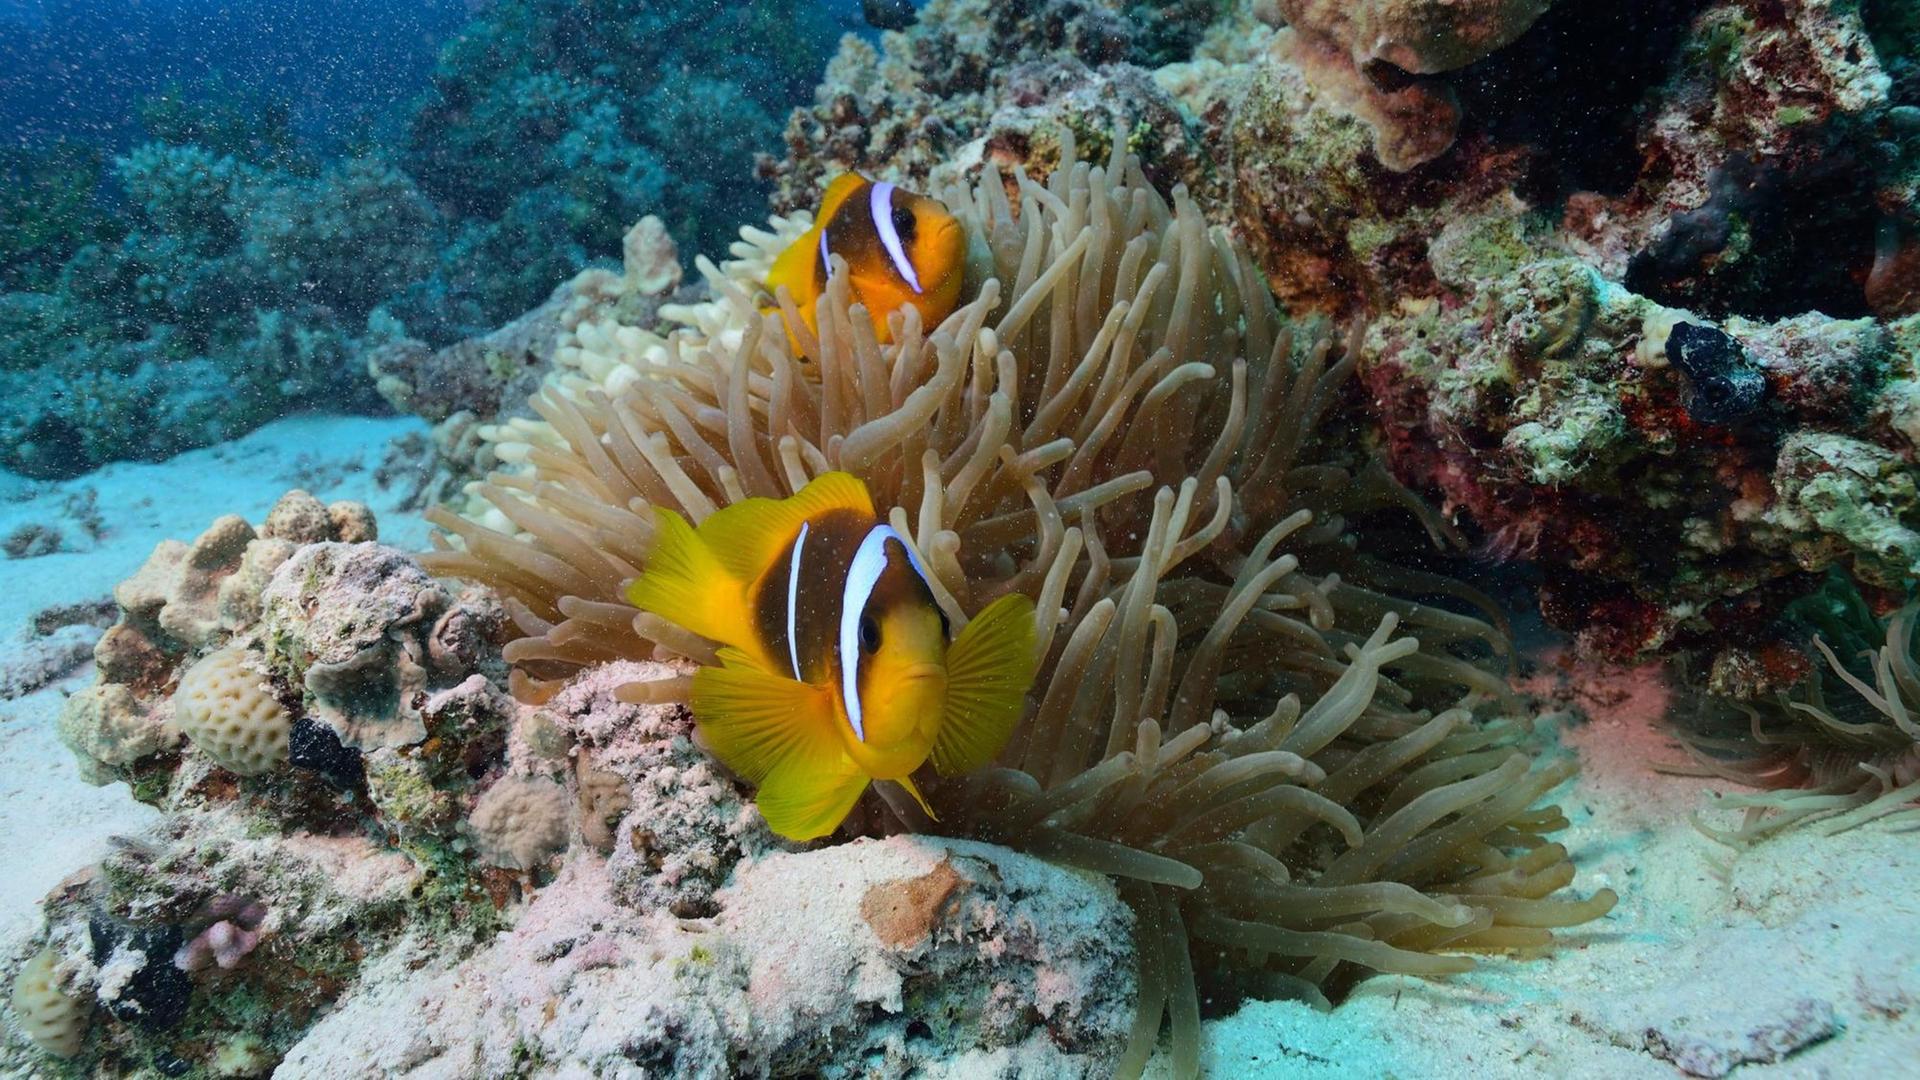 Anemonenfische (Amphiprion) - nach den beiden bekanntesten Arten häufig auch Clownfische genannt - sind eine in den Korallenriffen des tropischen Indopazifik vorkommende Gattung der Riffbarsche (Pomacentridae), die in enger Symbiose mit Seeanemonen lebt. (Foto von November 2013) | Verwendung weltweit